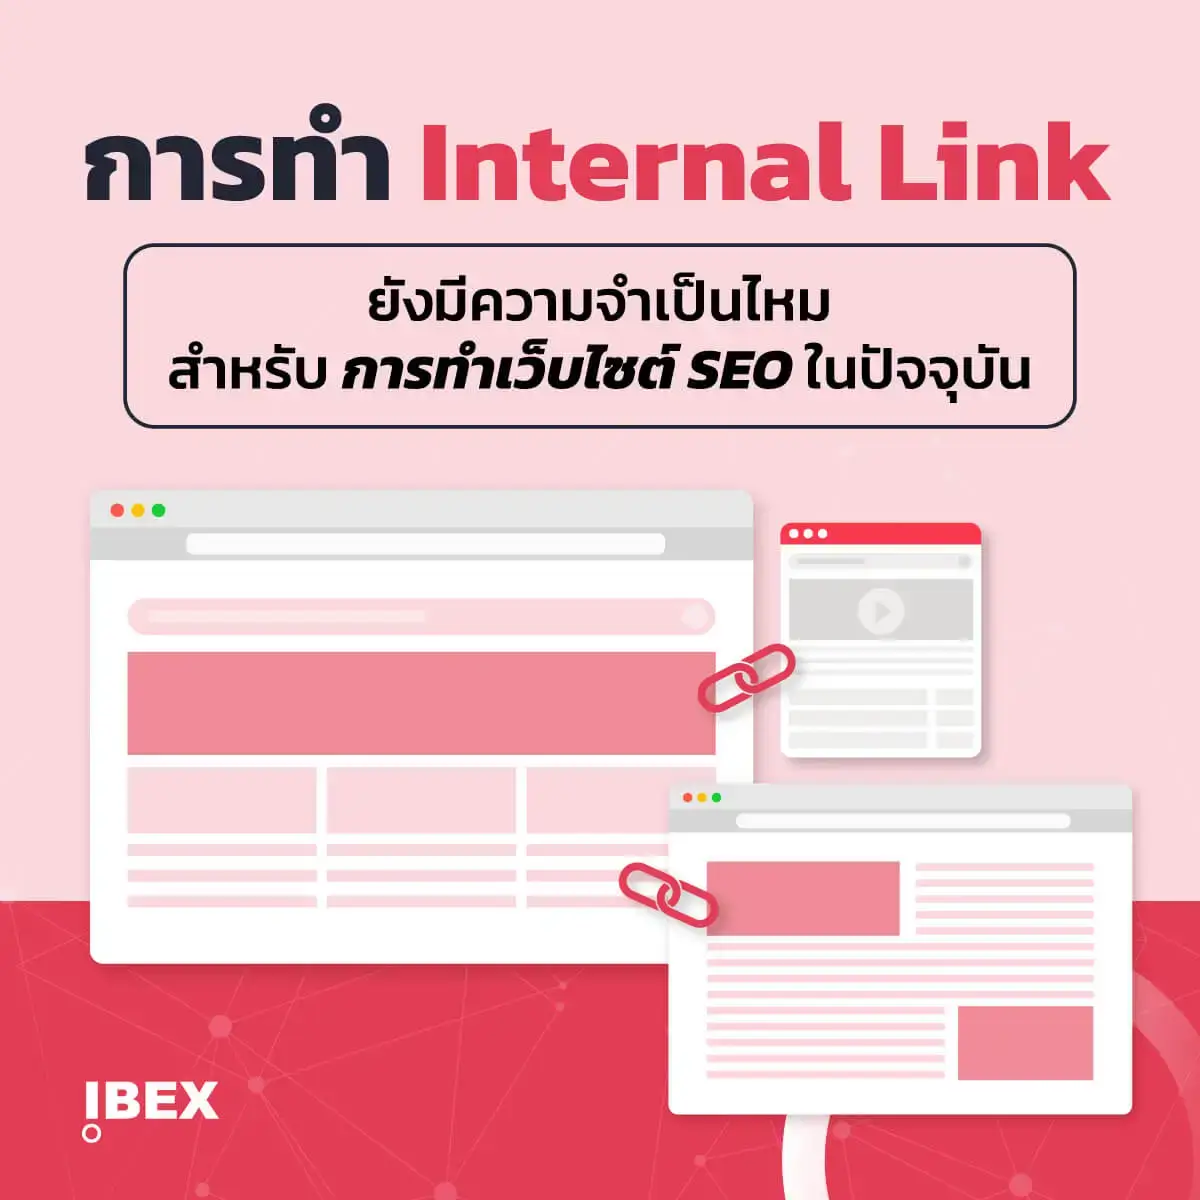 การทำ Internal Link ยังจำเป็นไหมสำหรับการทำเว็บไซต์ SEO